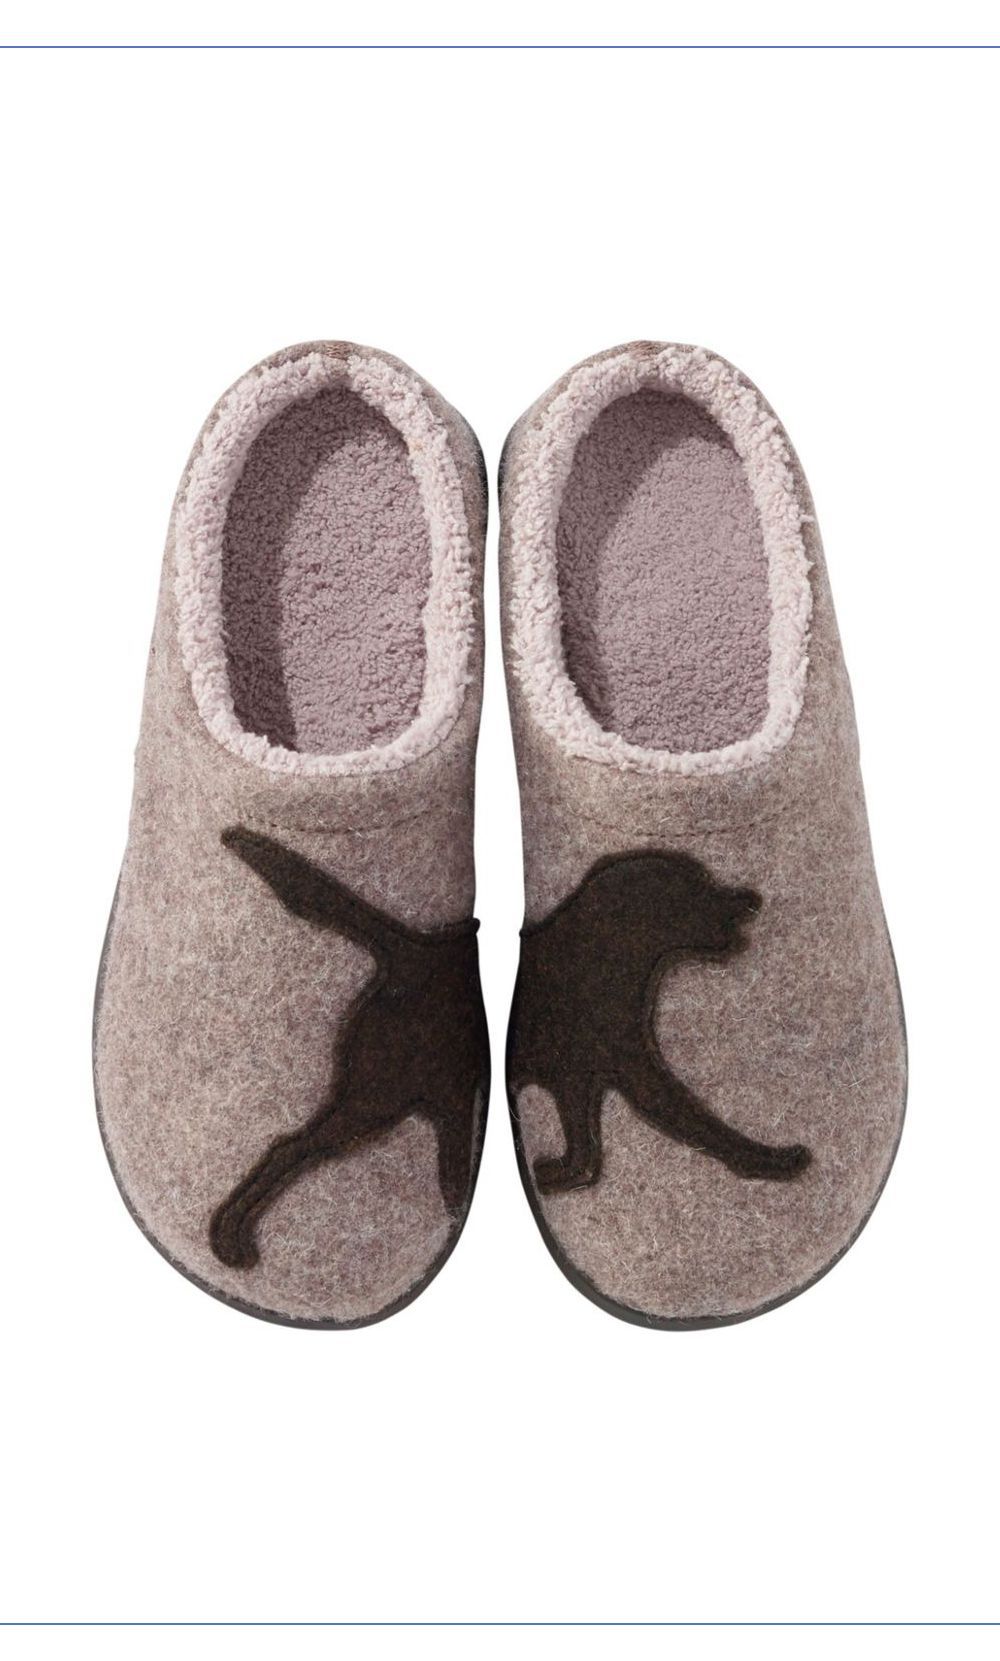 women's indoor and outdoor slippers